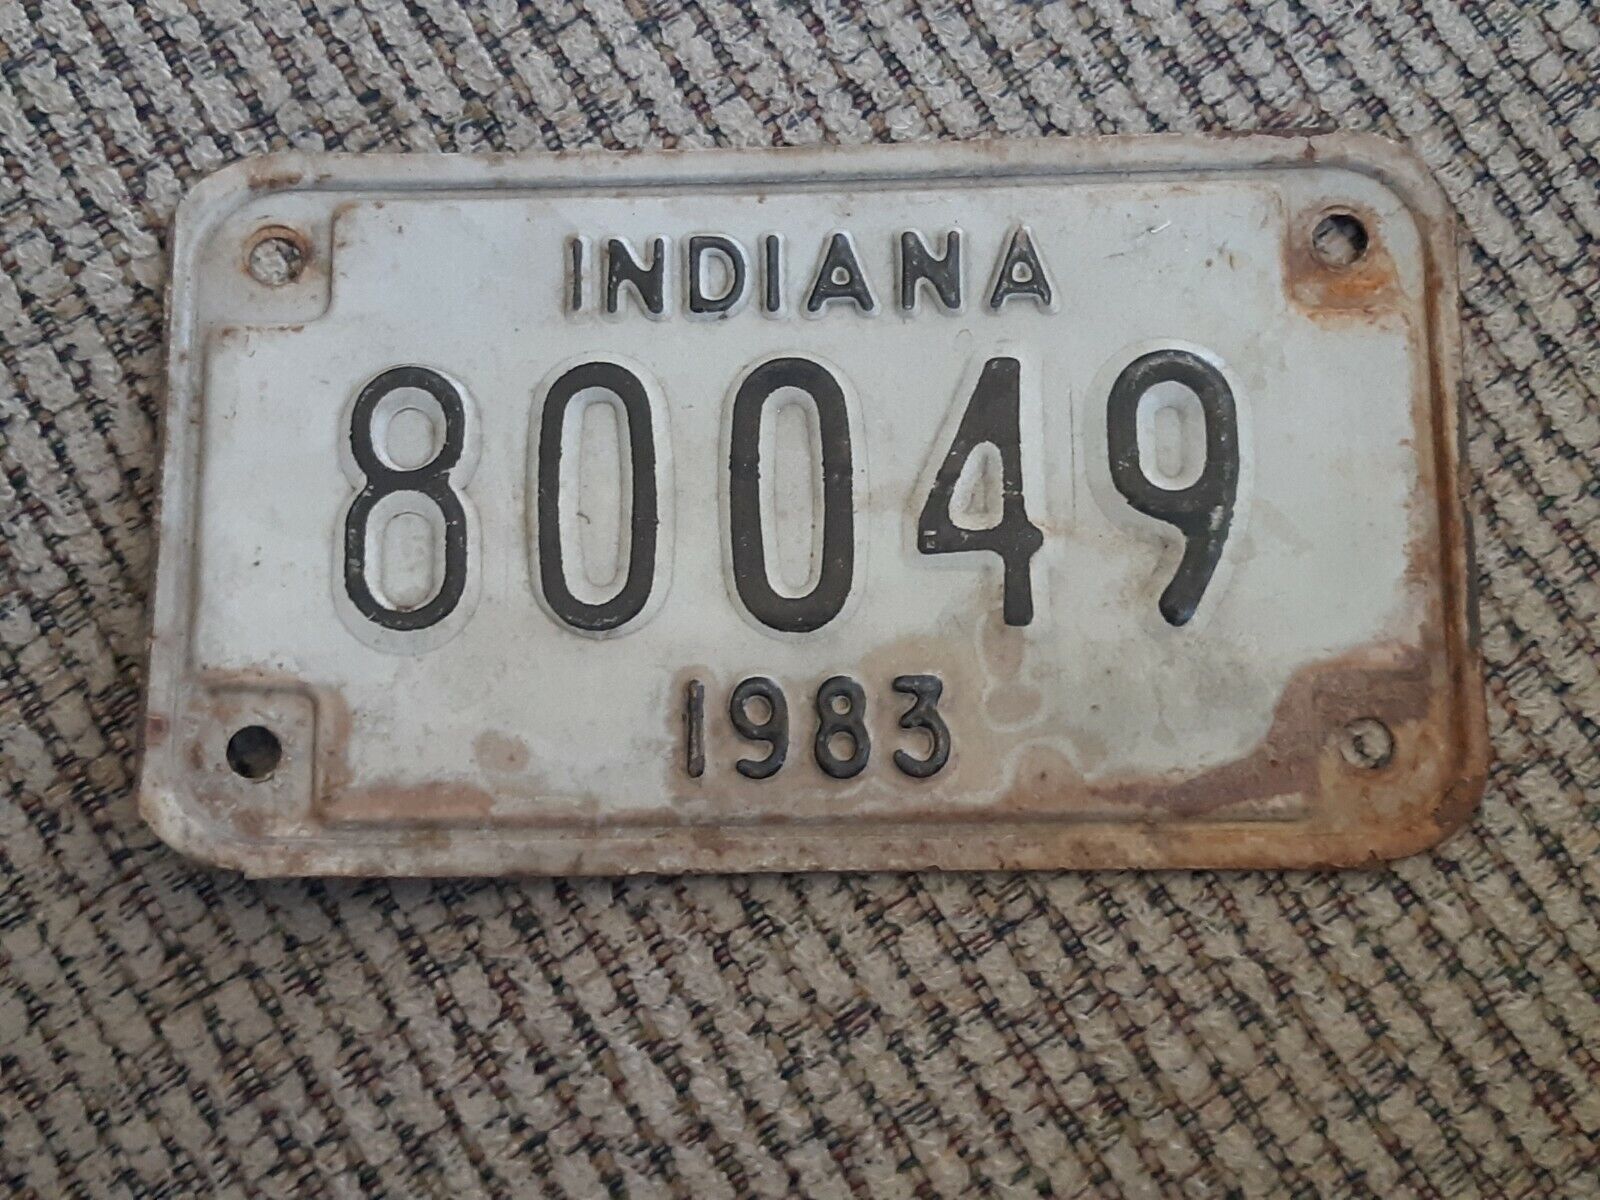 Indiana motorcycle license plates set/lot of 6 1977 1983 1984 1985 1987 1989 Gwarancja jakości, niska cena